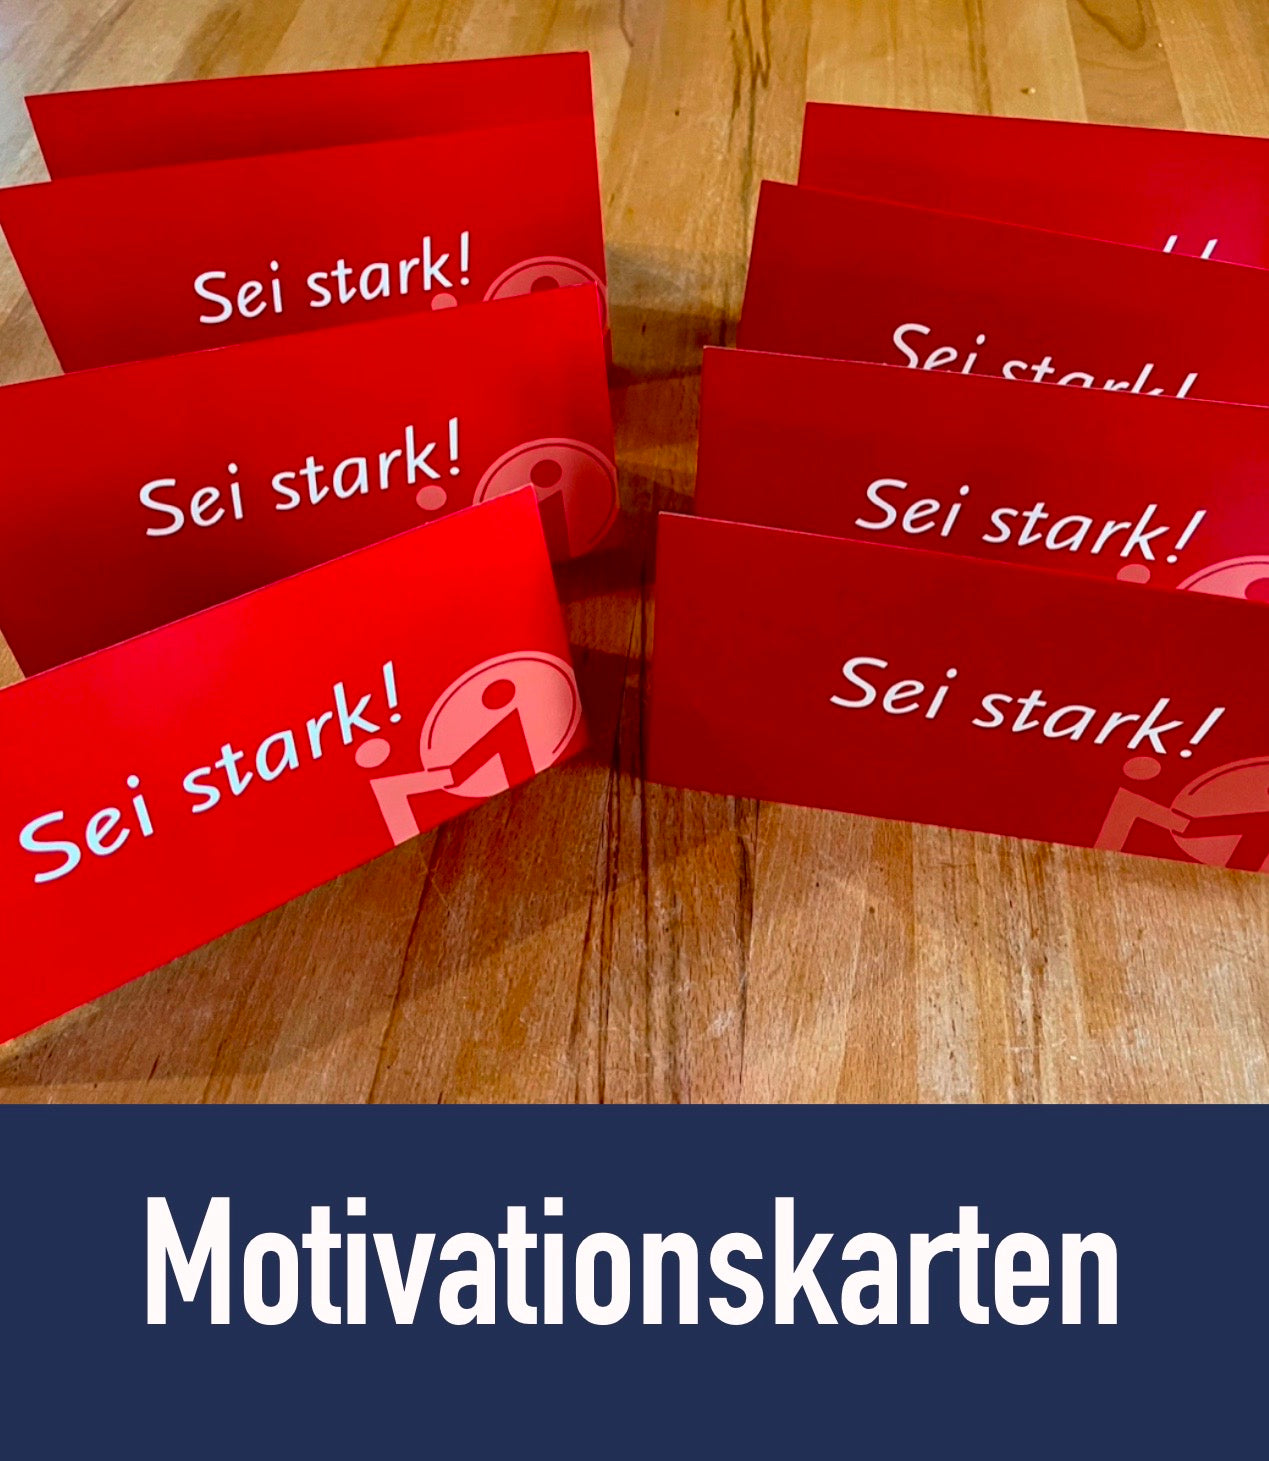 Motivationskarte "Sei stark!"